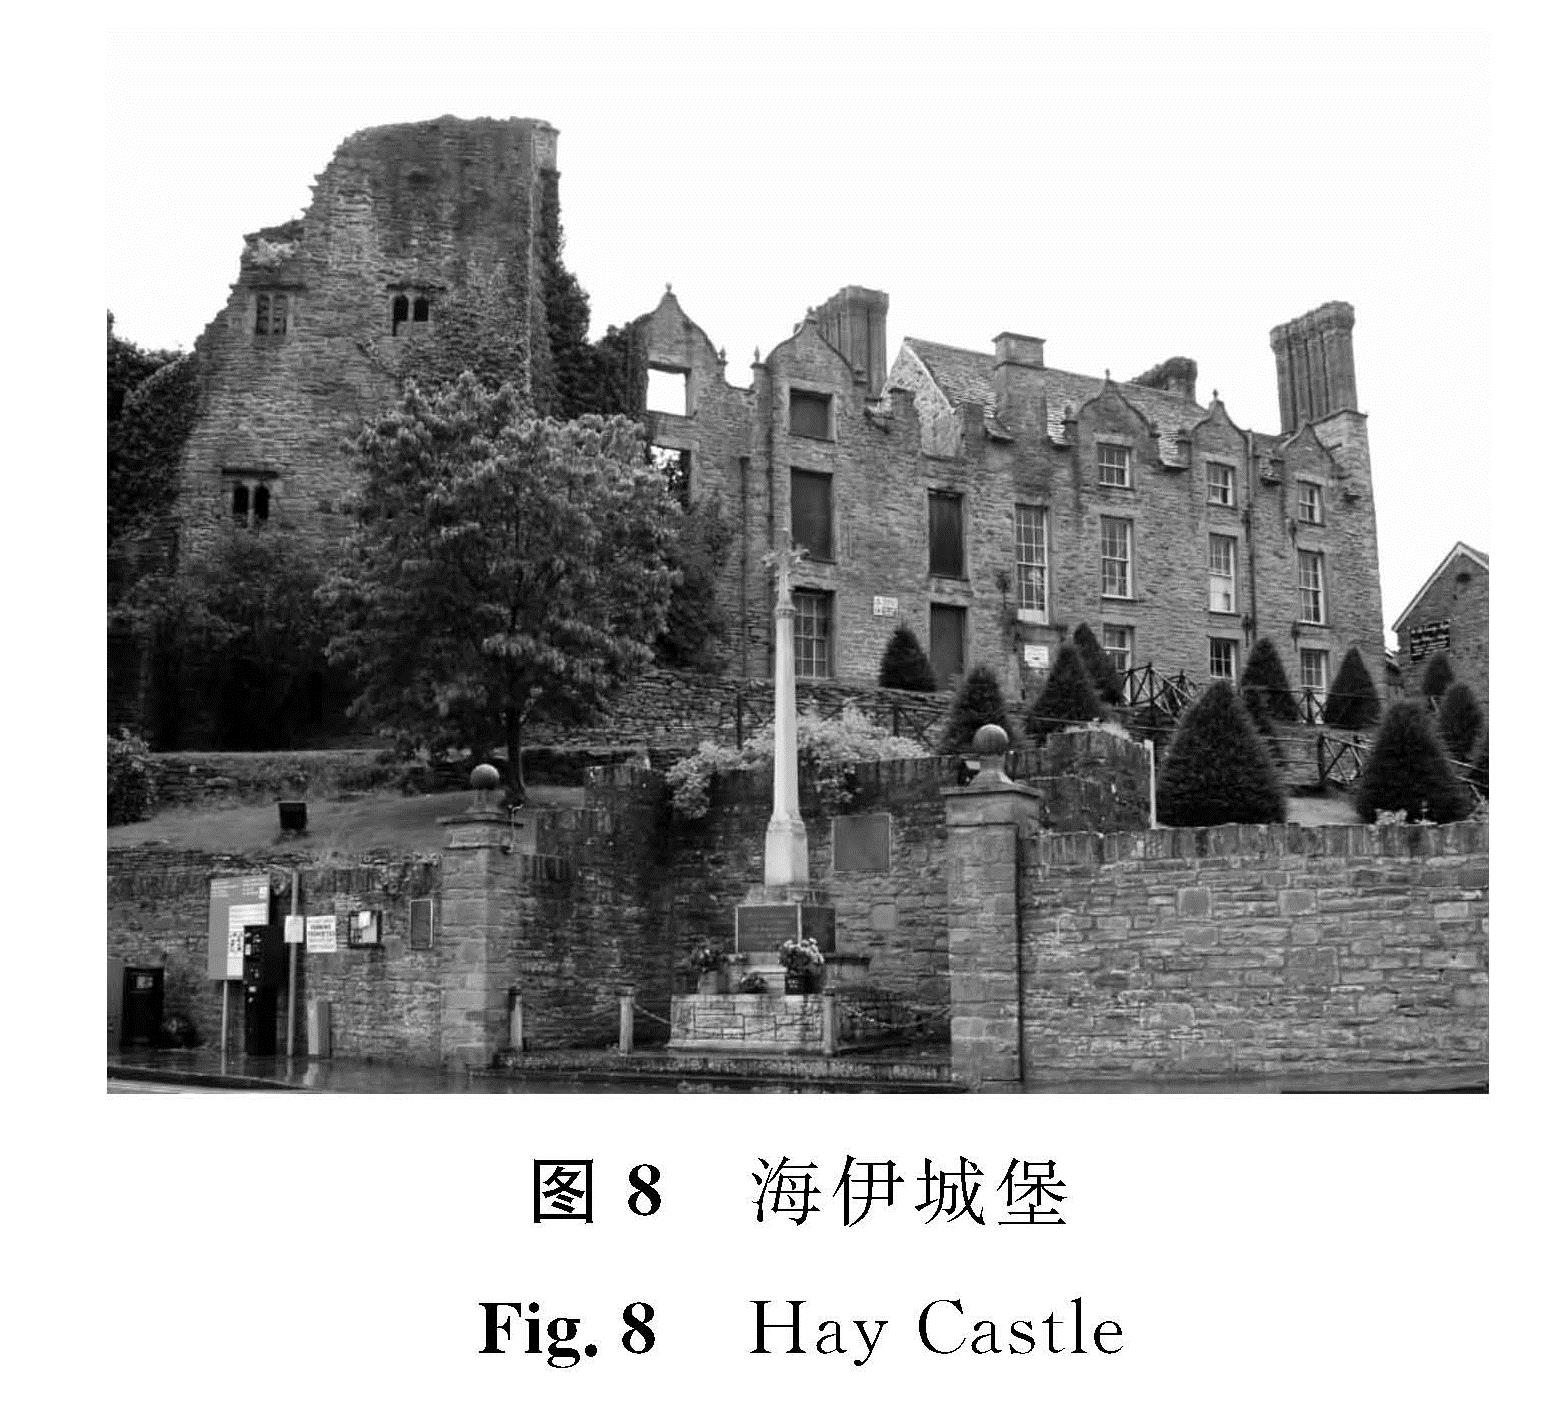 图8 海伊城堡<br/>Fig.8 Hay Castle